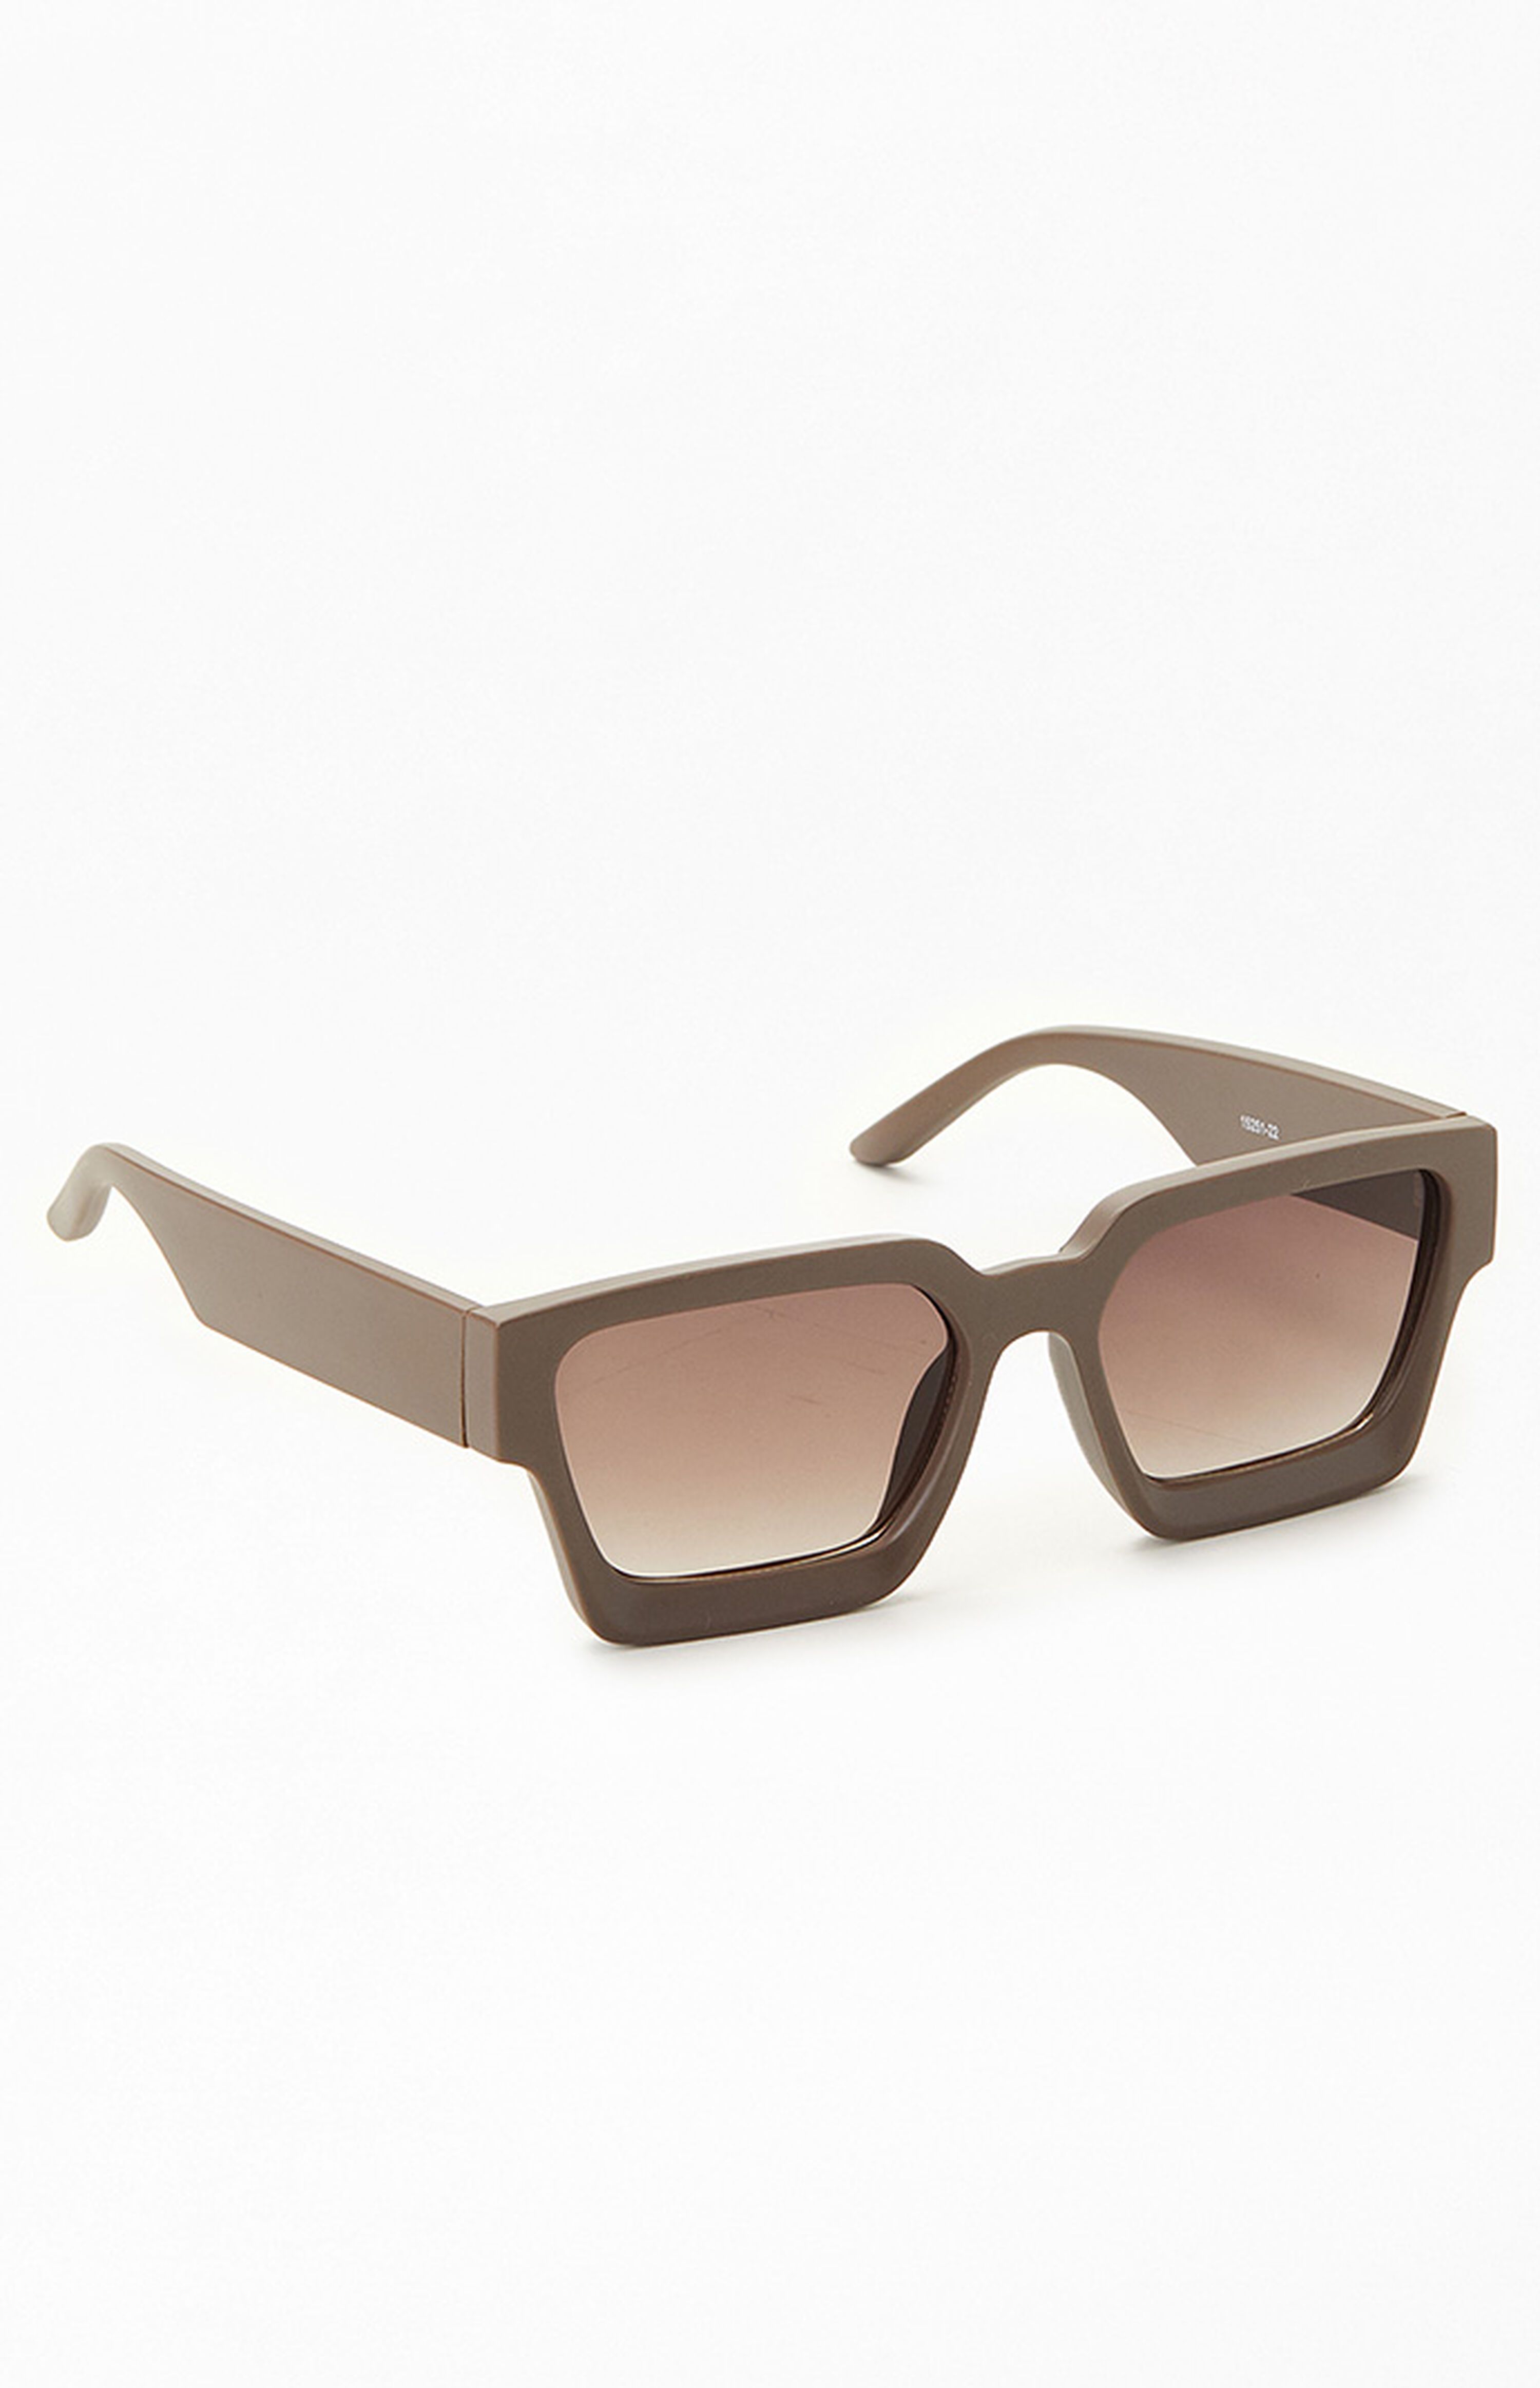 PacSun Charcoal Square Frame Sunglasses | PacSun | PacSun